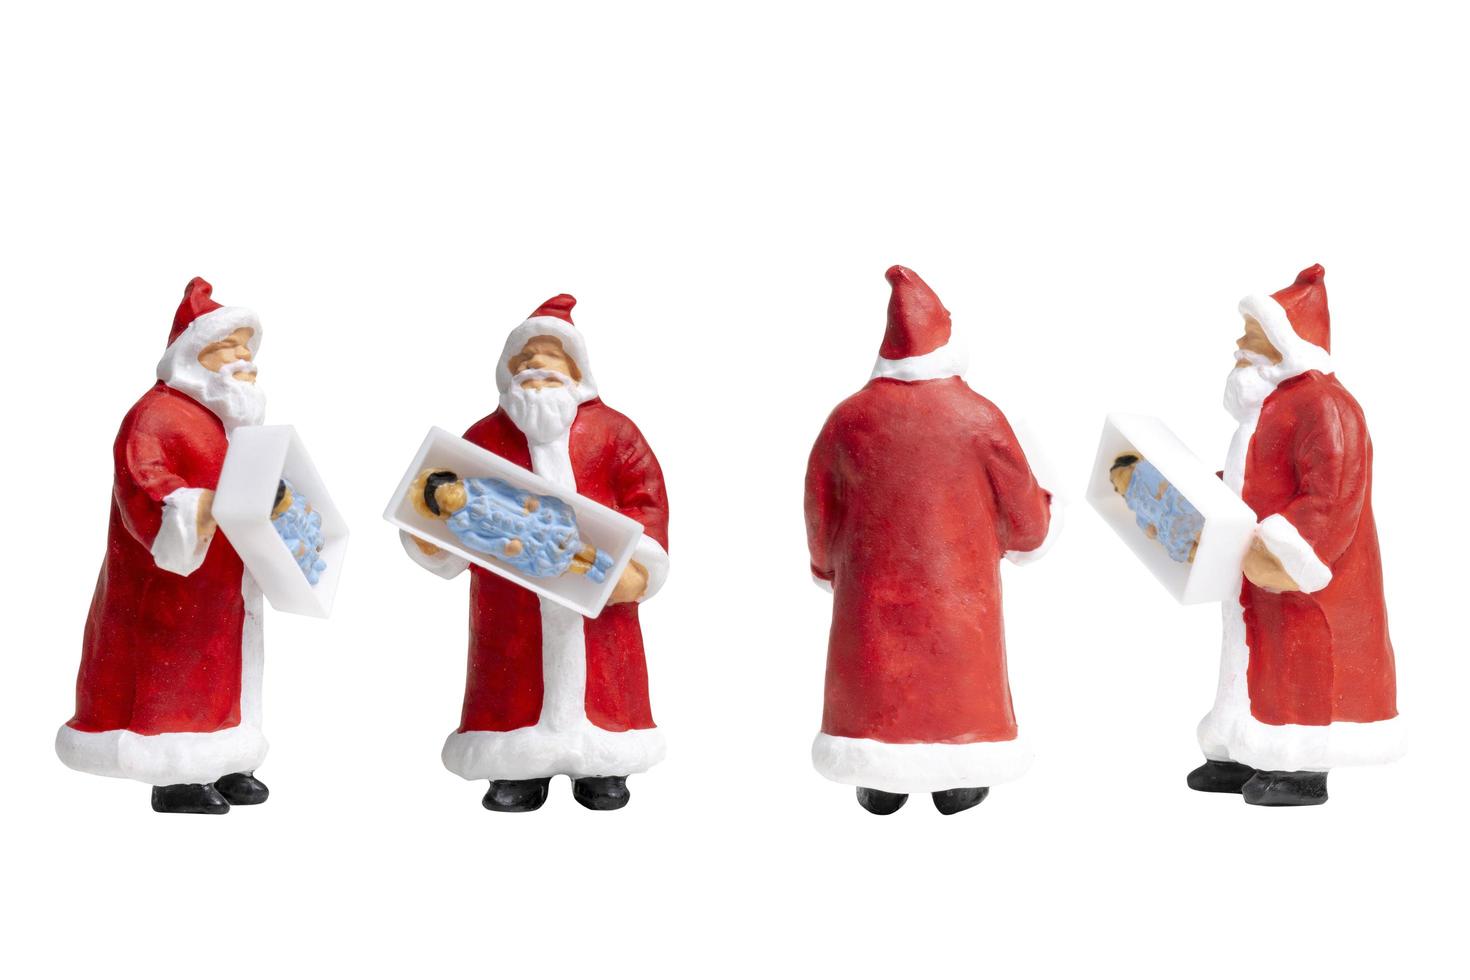 Miniatur-Weihnachtsmann, der eine Geschenkbox lokalisiert auf einem weißen Hintergrund hält foto